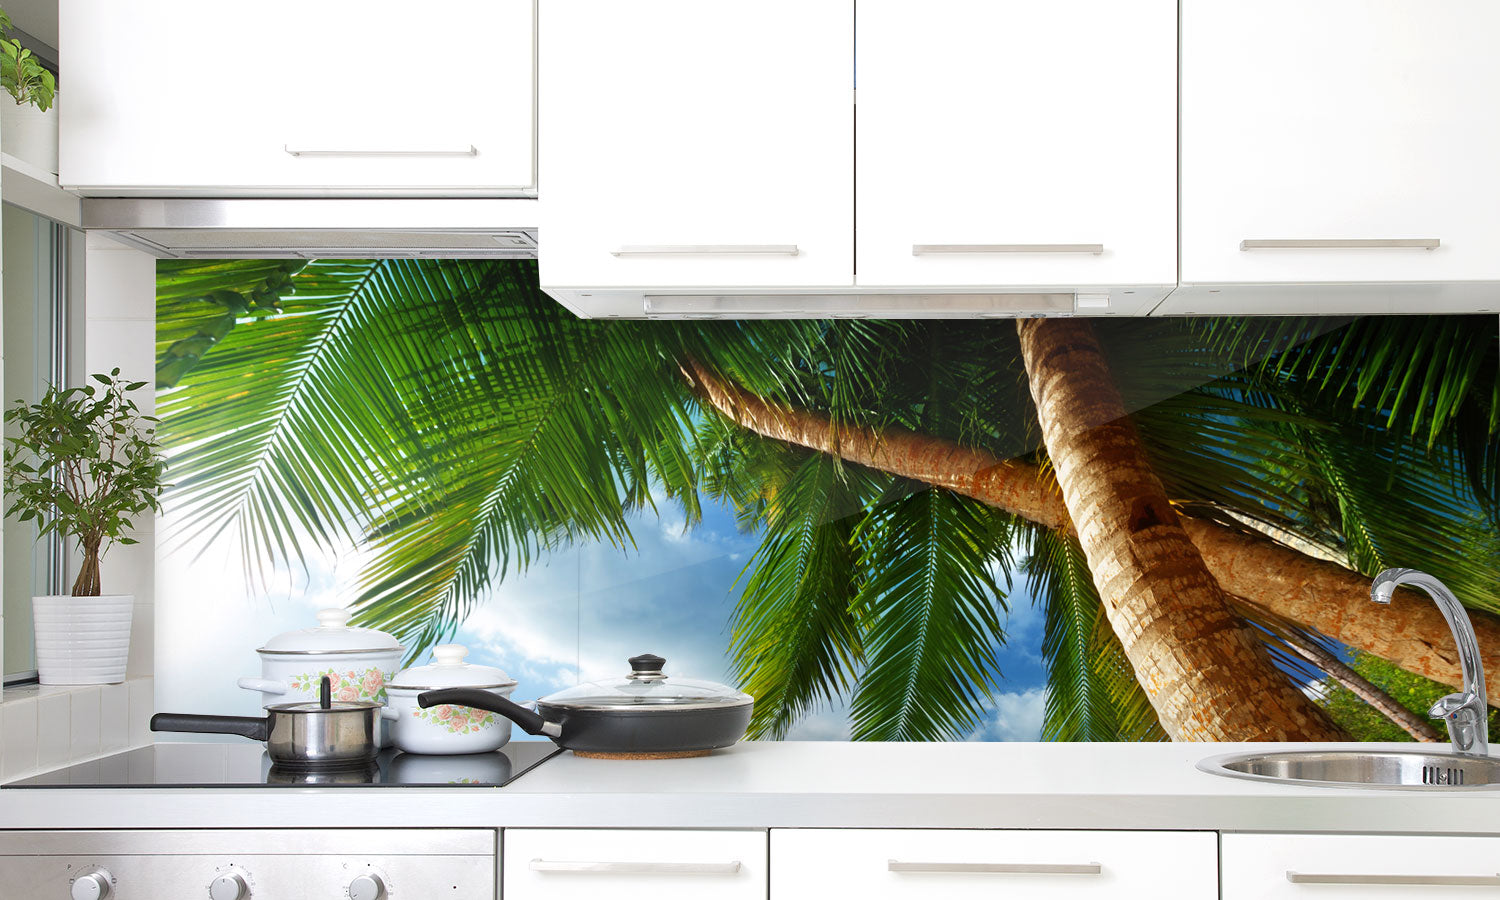 Paneli za kuhinje Sunset on beach -  Stakleni / PVC ploče / Pleksiglas -  sa printom za kuhinju, Zidne obloge PKU399